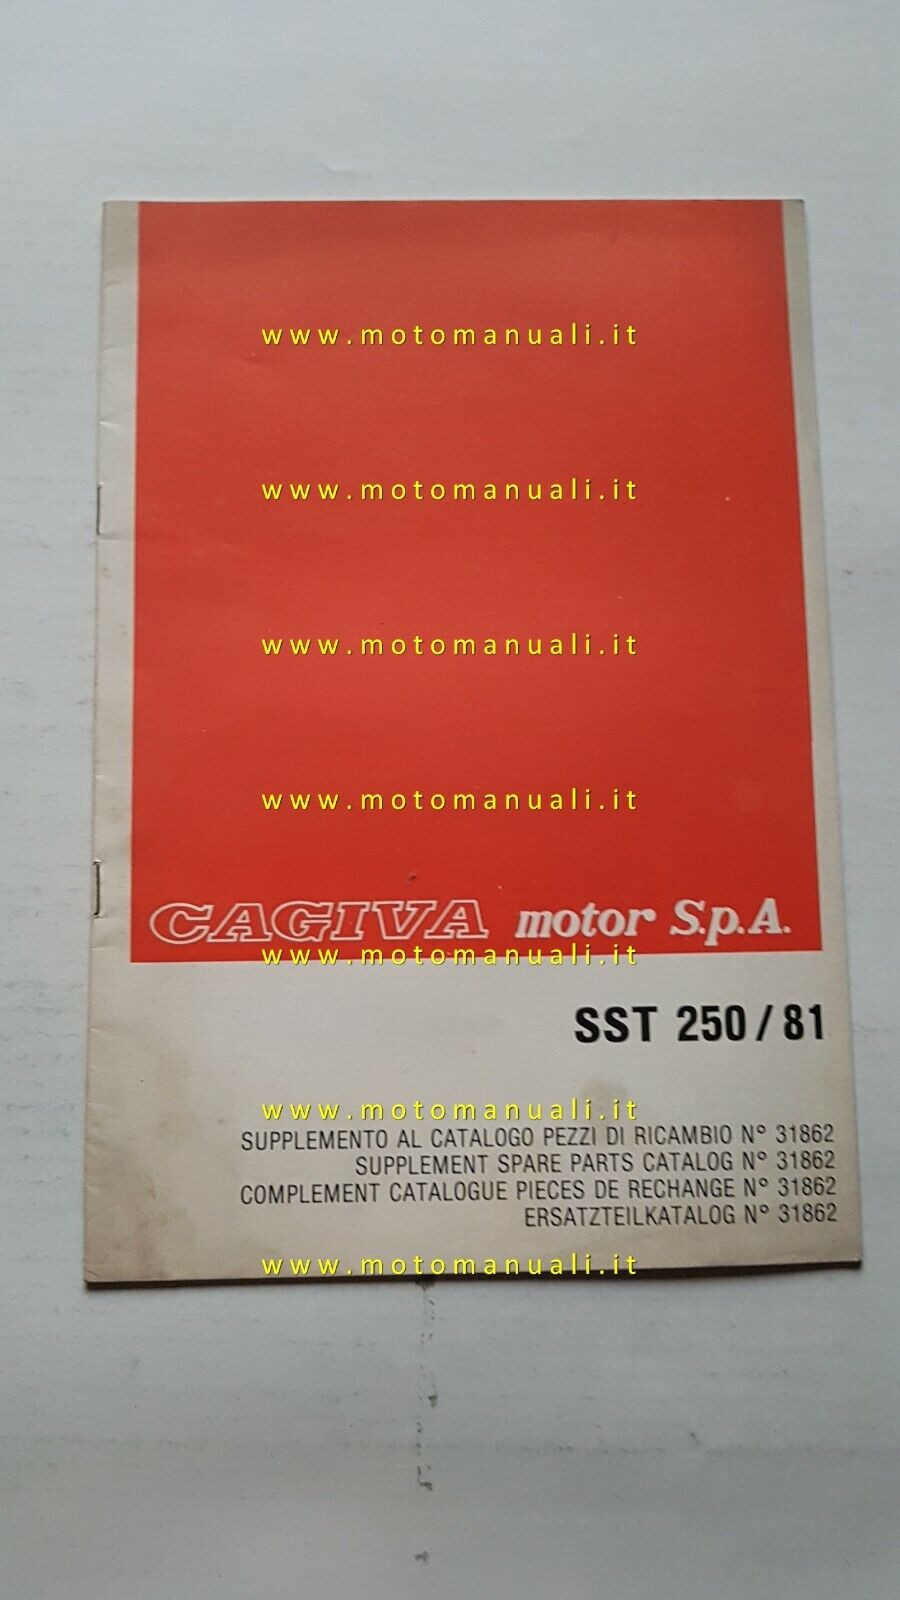  Cagiva-HD SST 250 1981 supplemento varianti catalogo ricambi SST 250 1980 